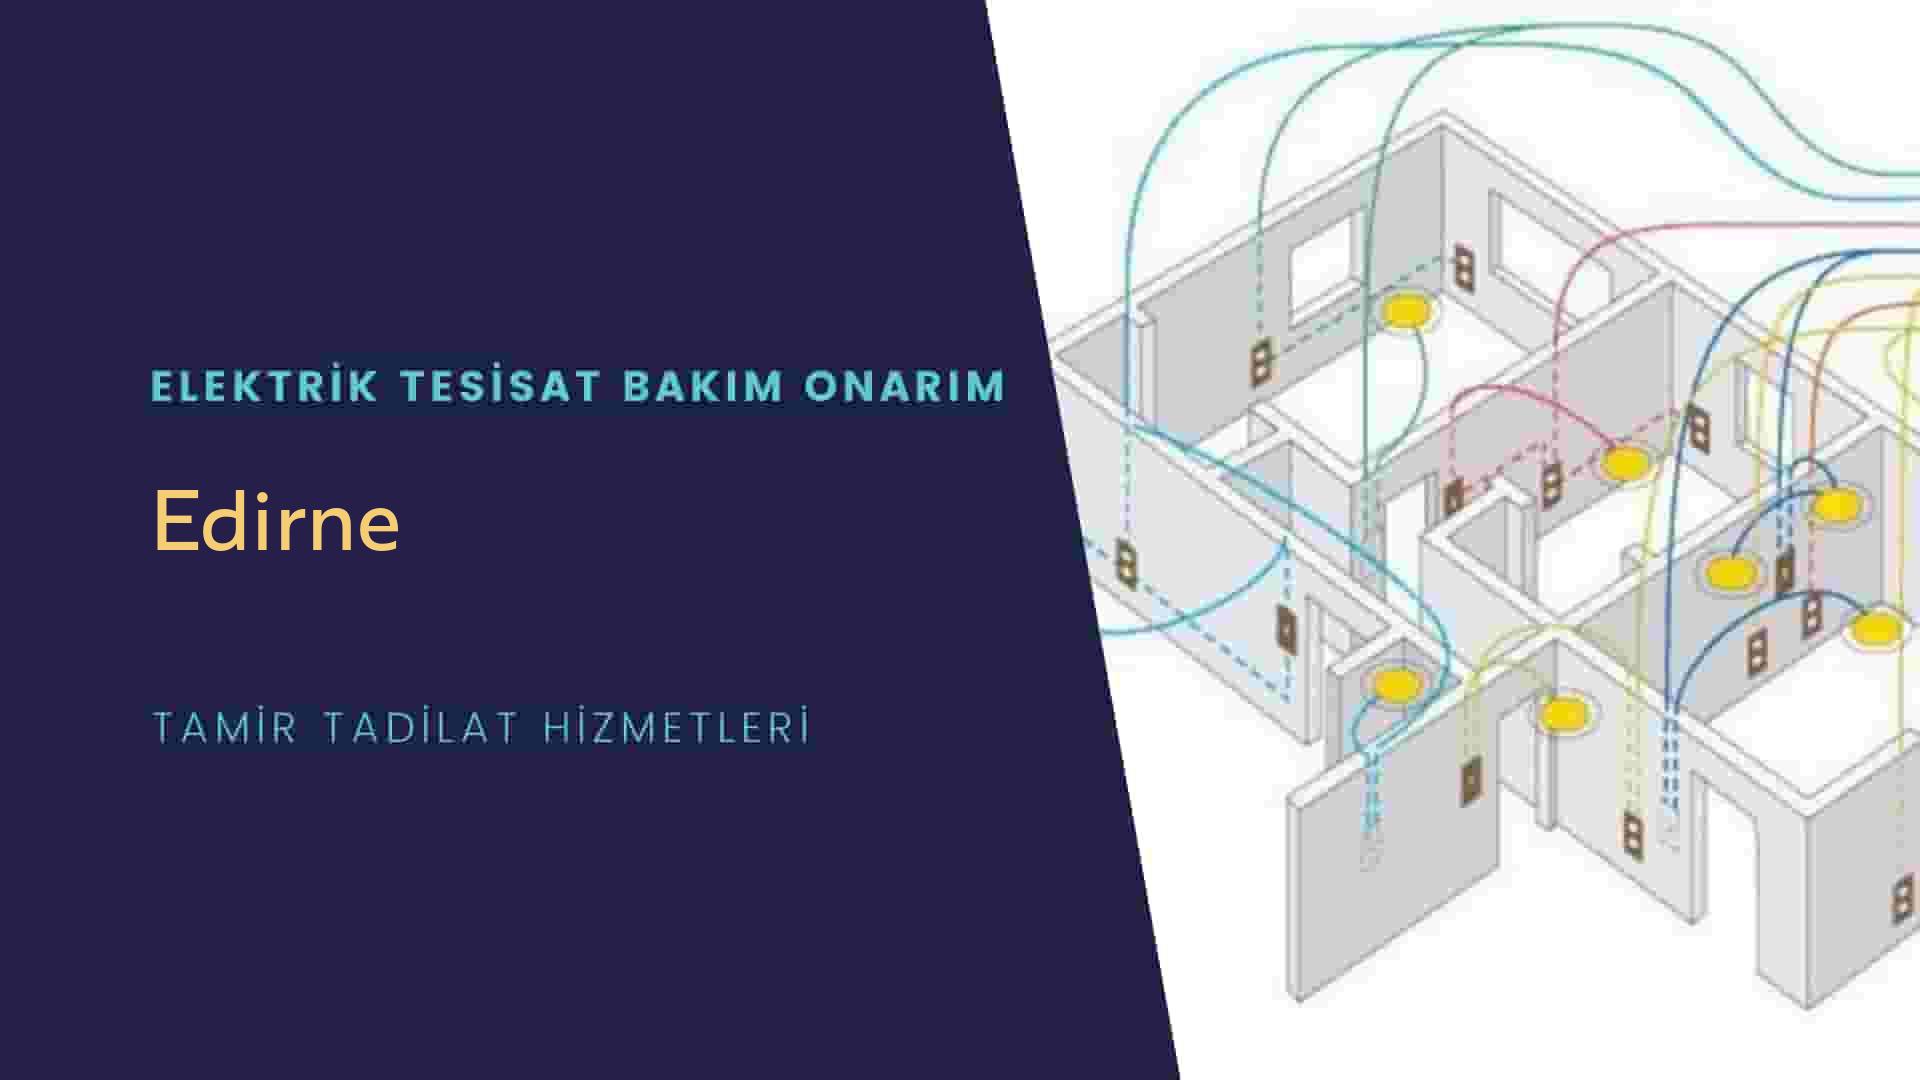 Edirne'de elektrik tesisatı ustalarımı arıyorsunuz doğru adrestenizi Edirne elektrik tesisatı ustalarımız 7/24 sizlere hizmet vermekten mutluluk duyar.